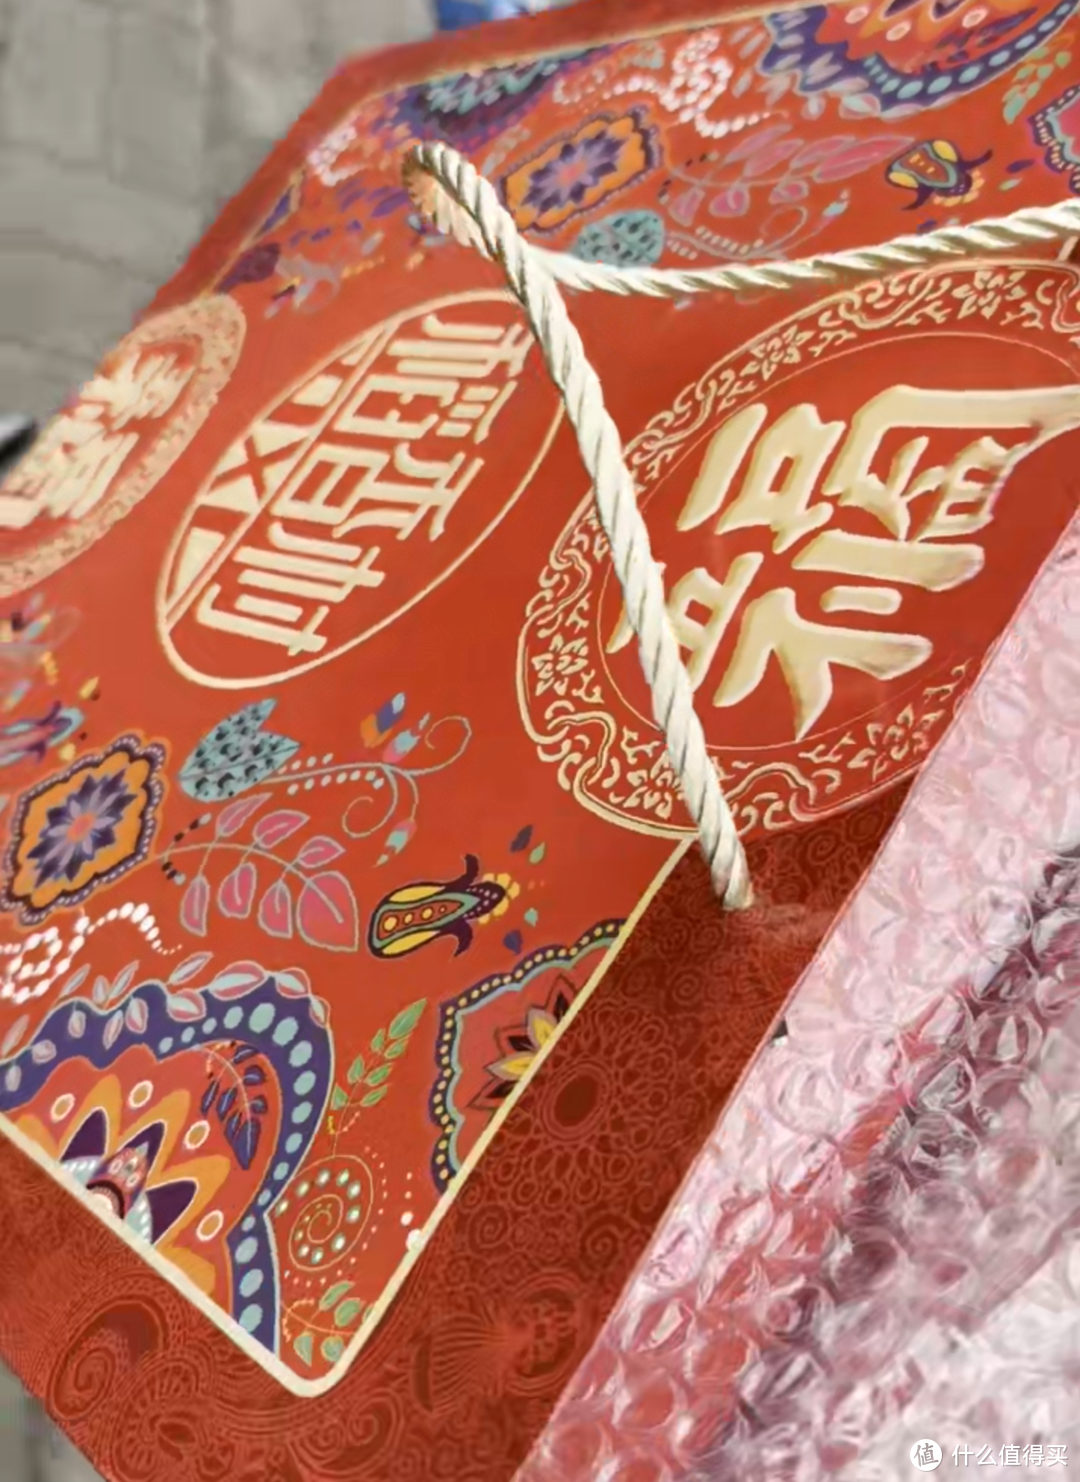  让爱在唇齿间传递，母亲节礼物推荐 — 稻香村传统糕点礼盒